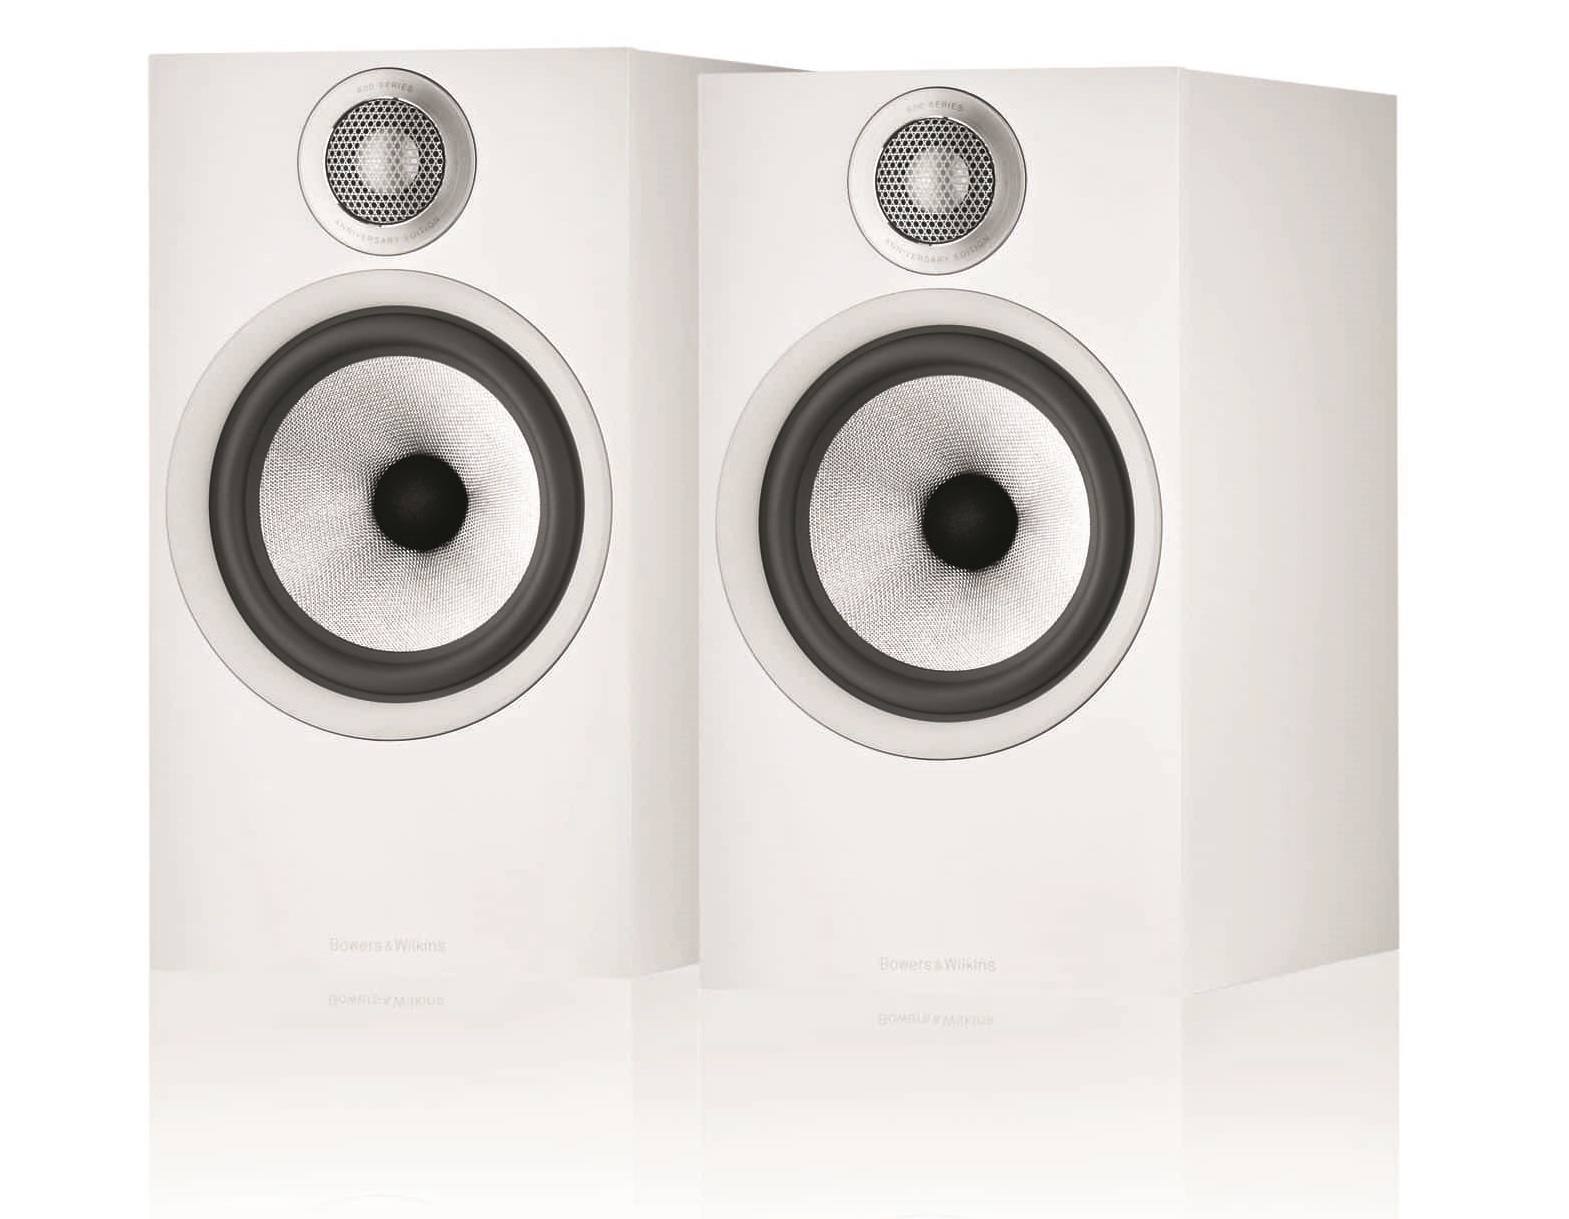 Полочная акустика B&W 607 S2 Anniversary Edition White, купить в Москве, цены в интернет-магазинах на Мегамаркет